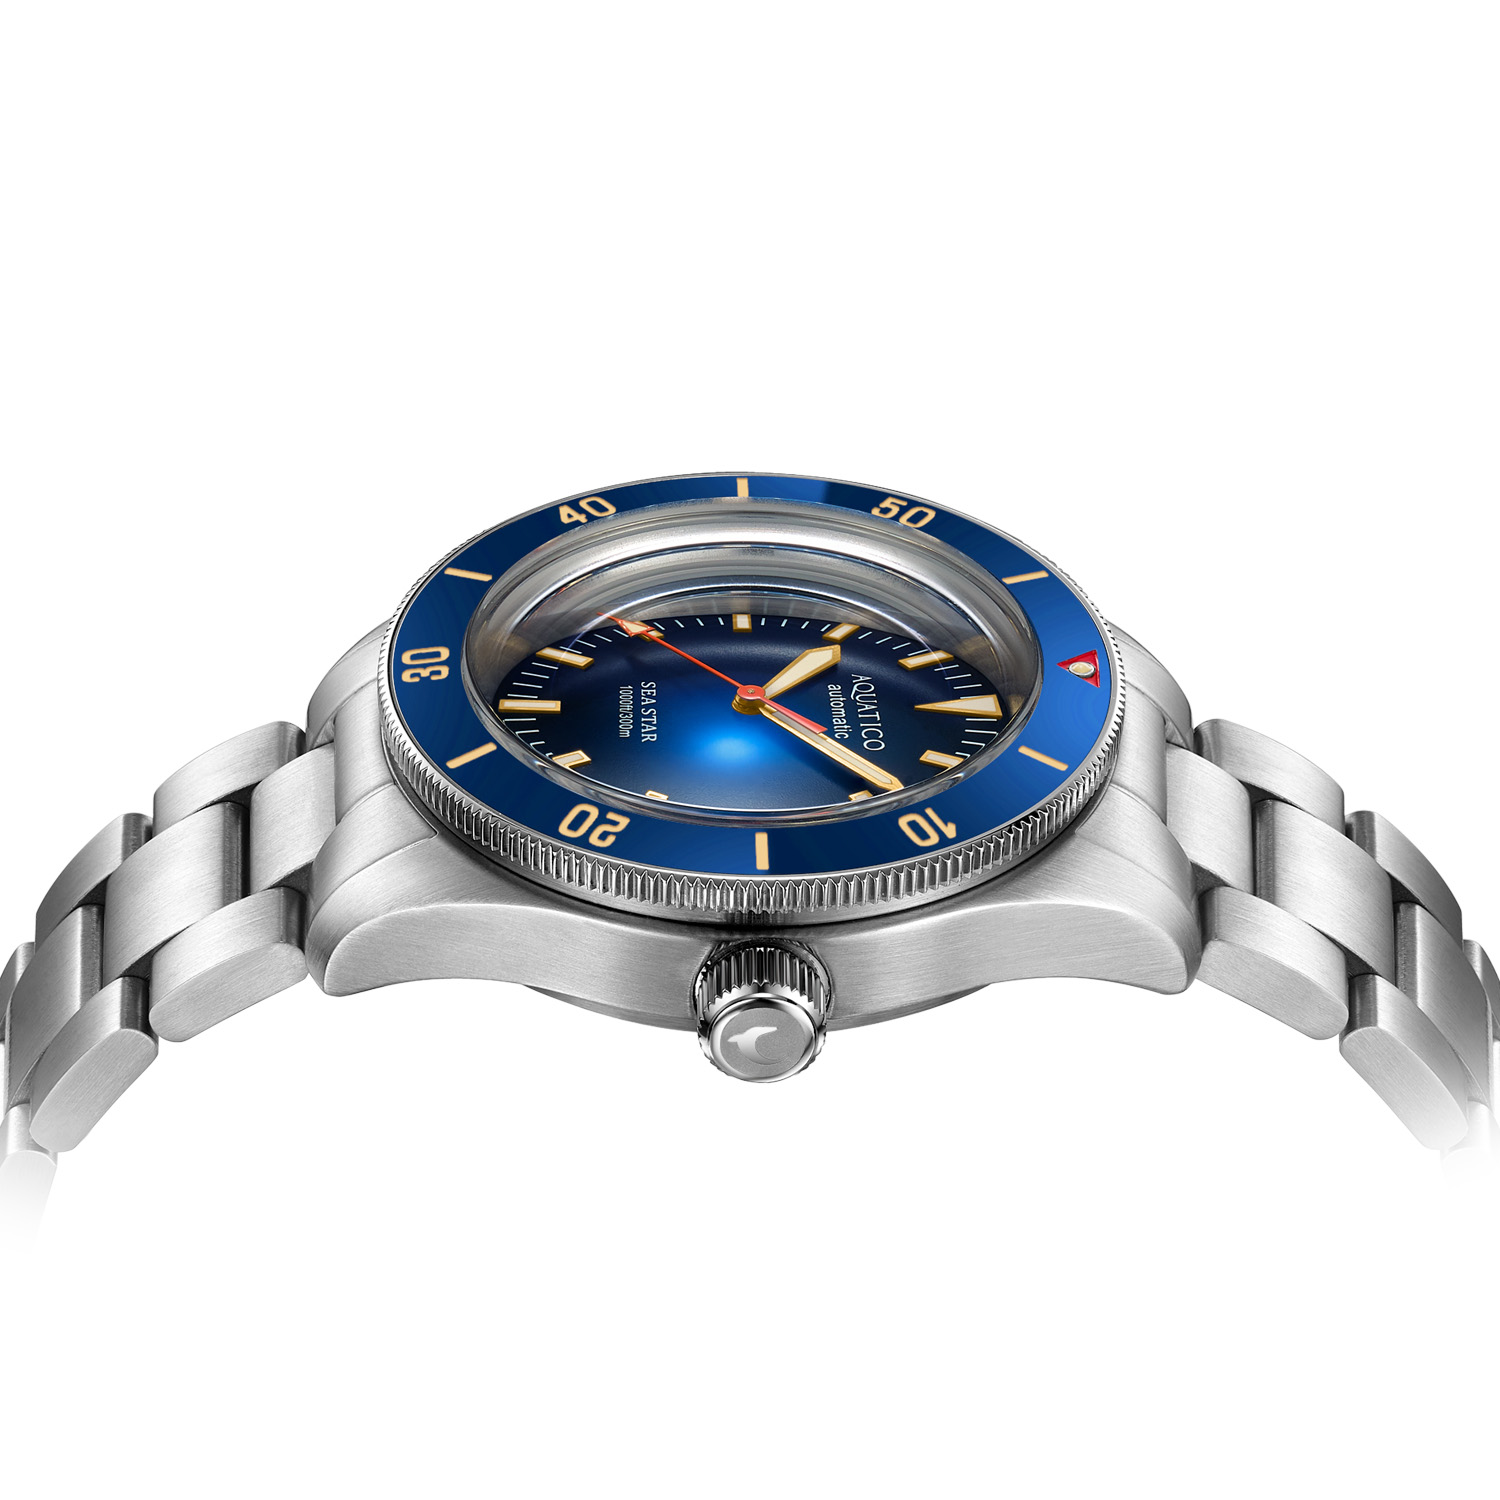 Aquatico Sea Star V2 42mm Automatic Men's Diver Watch Blue Dial/Blue Bezel AQ1009S-BL-NH35 - Click Image to Close